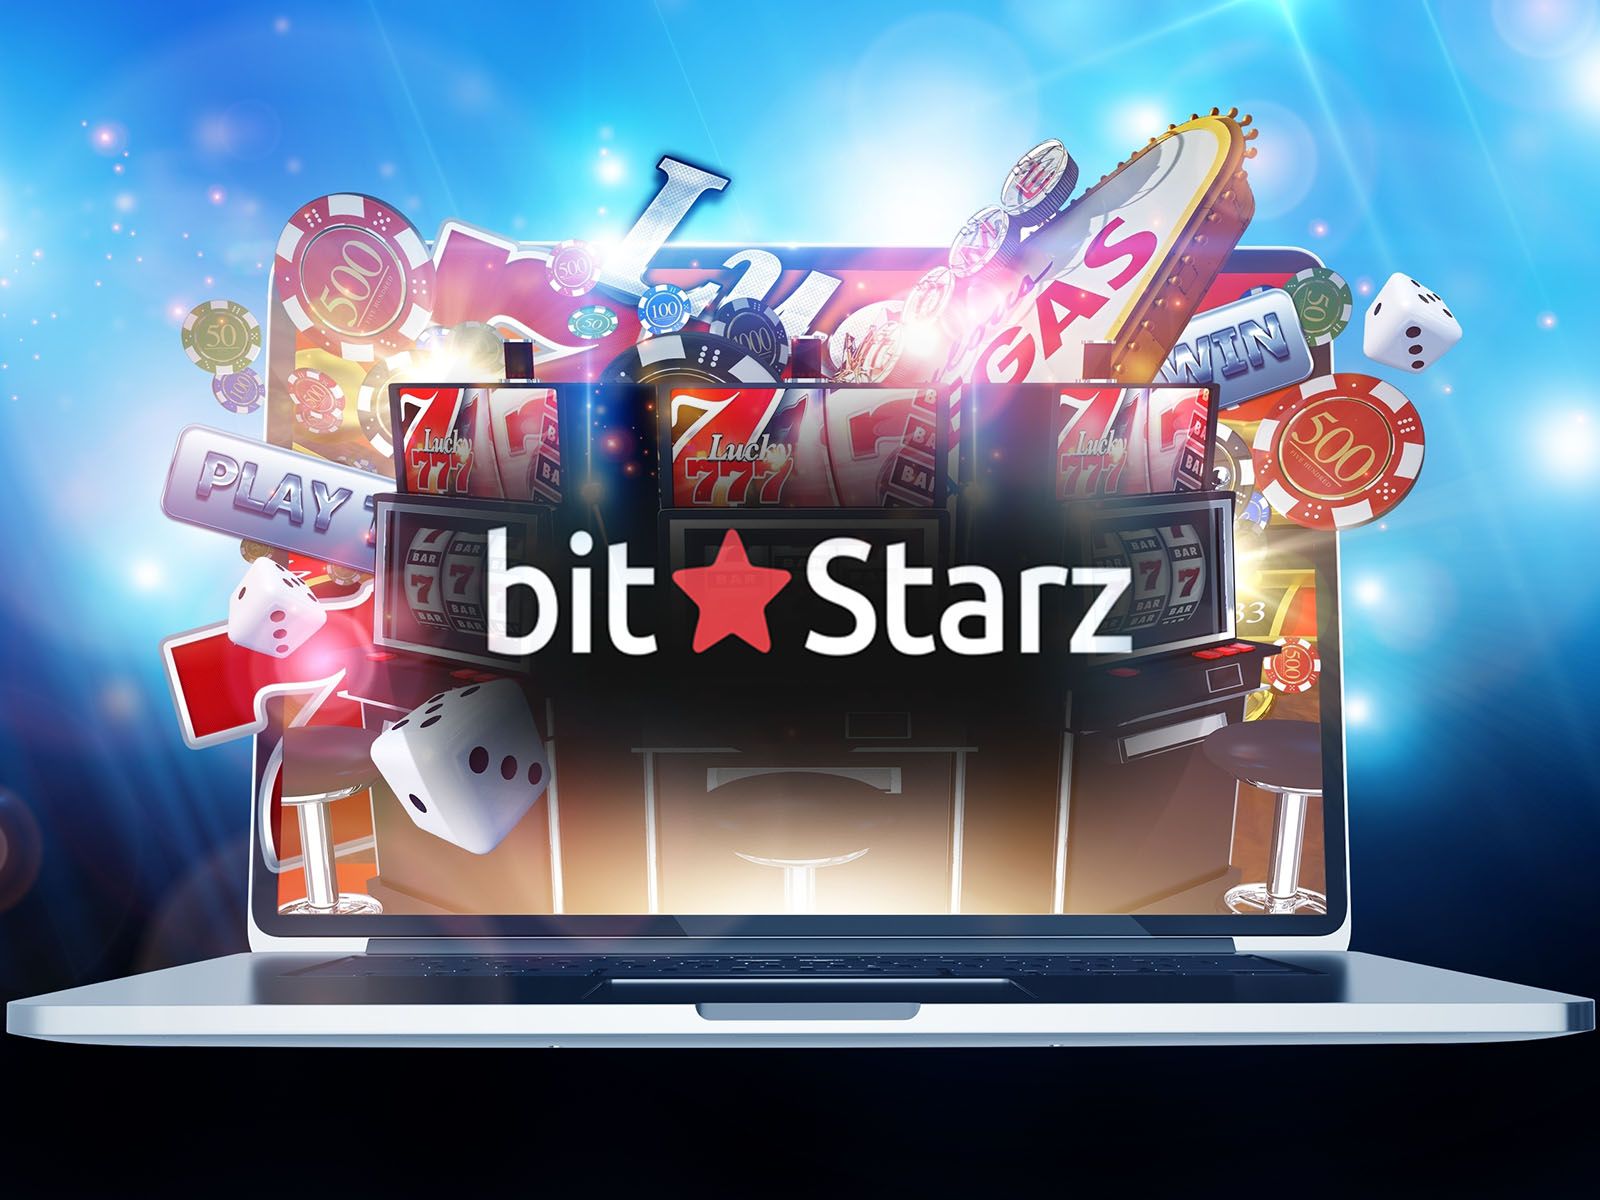 Bitz Casino офіційний сайт казино, танцювати в ліцензійні слоти отримаєте та розпишіться аржани, онлайн ігрові автомати